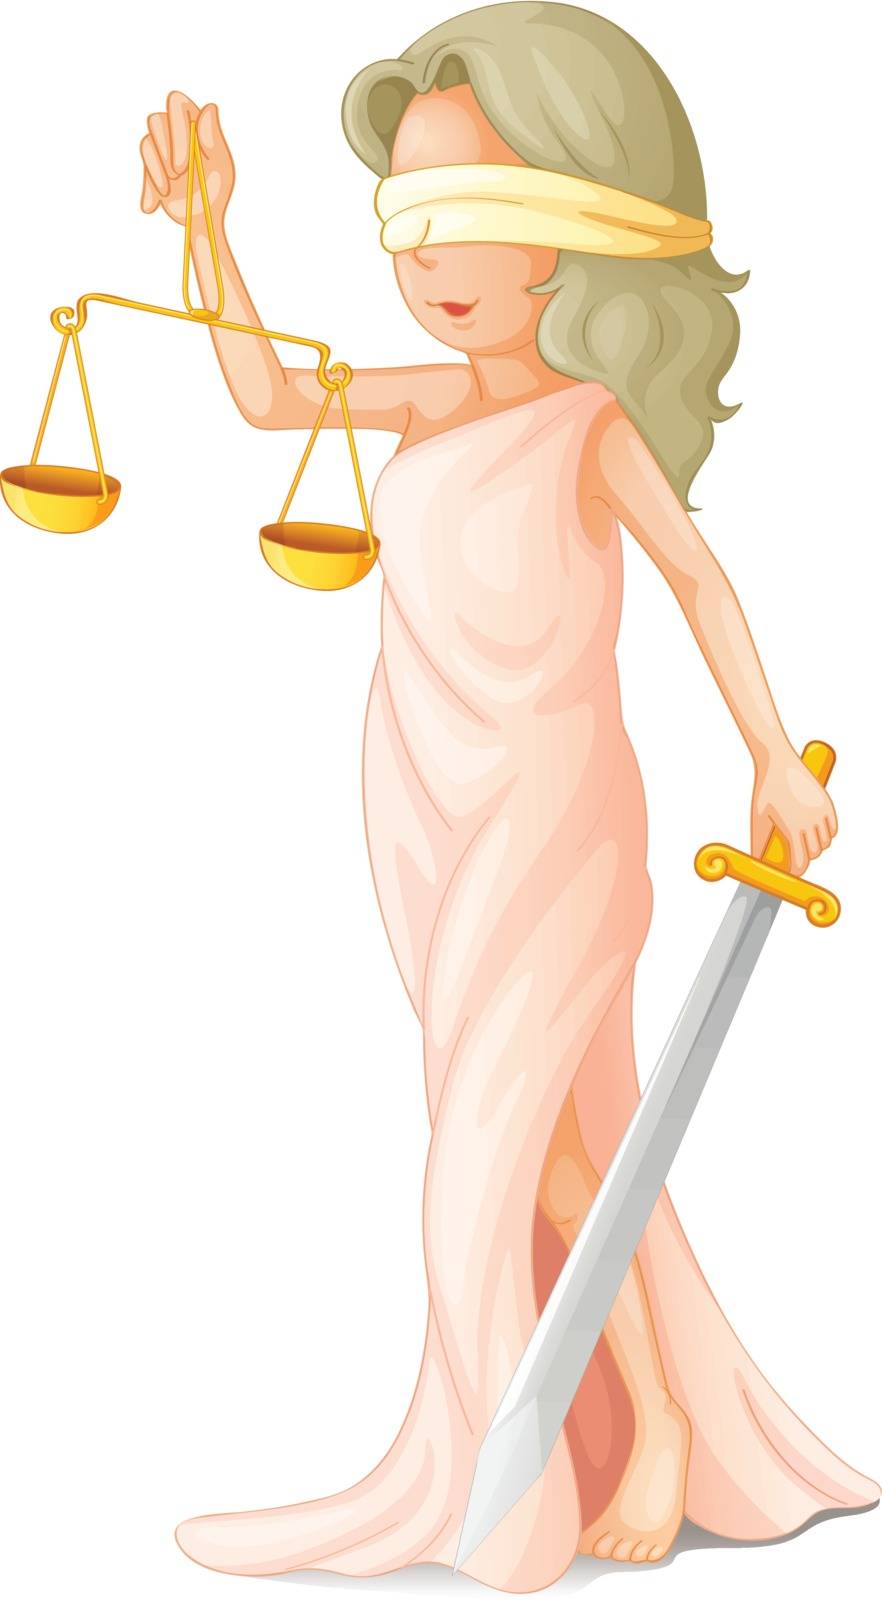 Illustration of blind justice concept